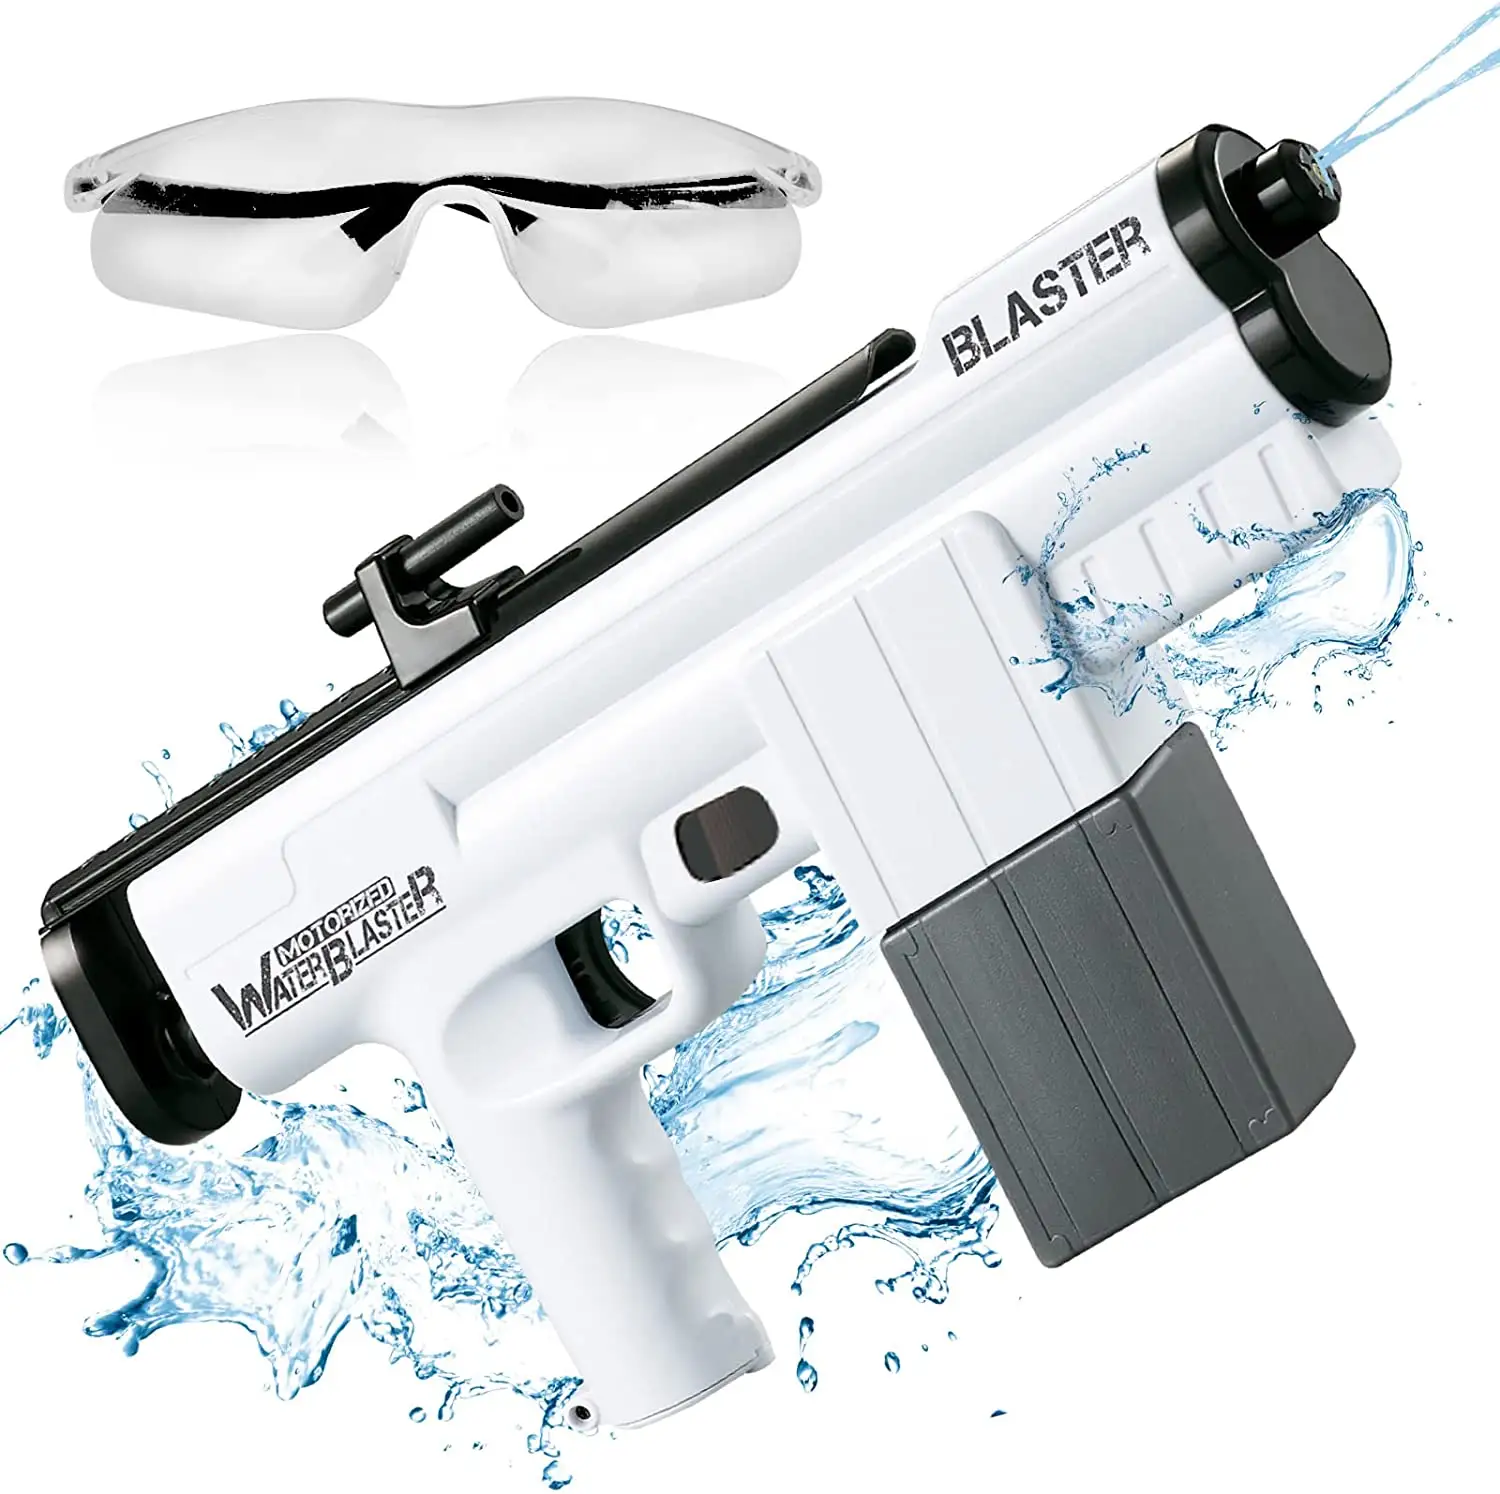 Elektrische Wasser pistole, automatische Wassers pritz pistolen mit 375CC hoher Kapazität für Kinder und Erwachsene, Spritzpistolen-Spielzeug mit einer Reichweite von bis zu 22 FT, Wat